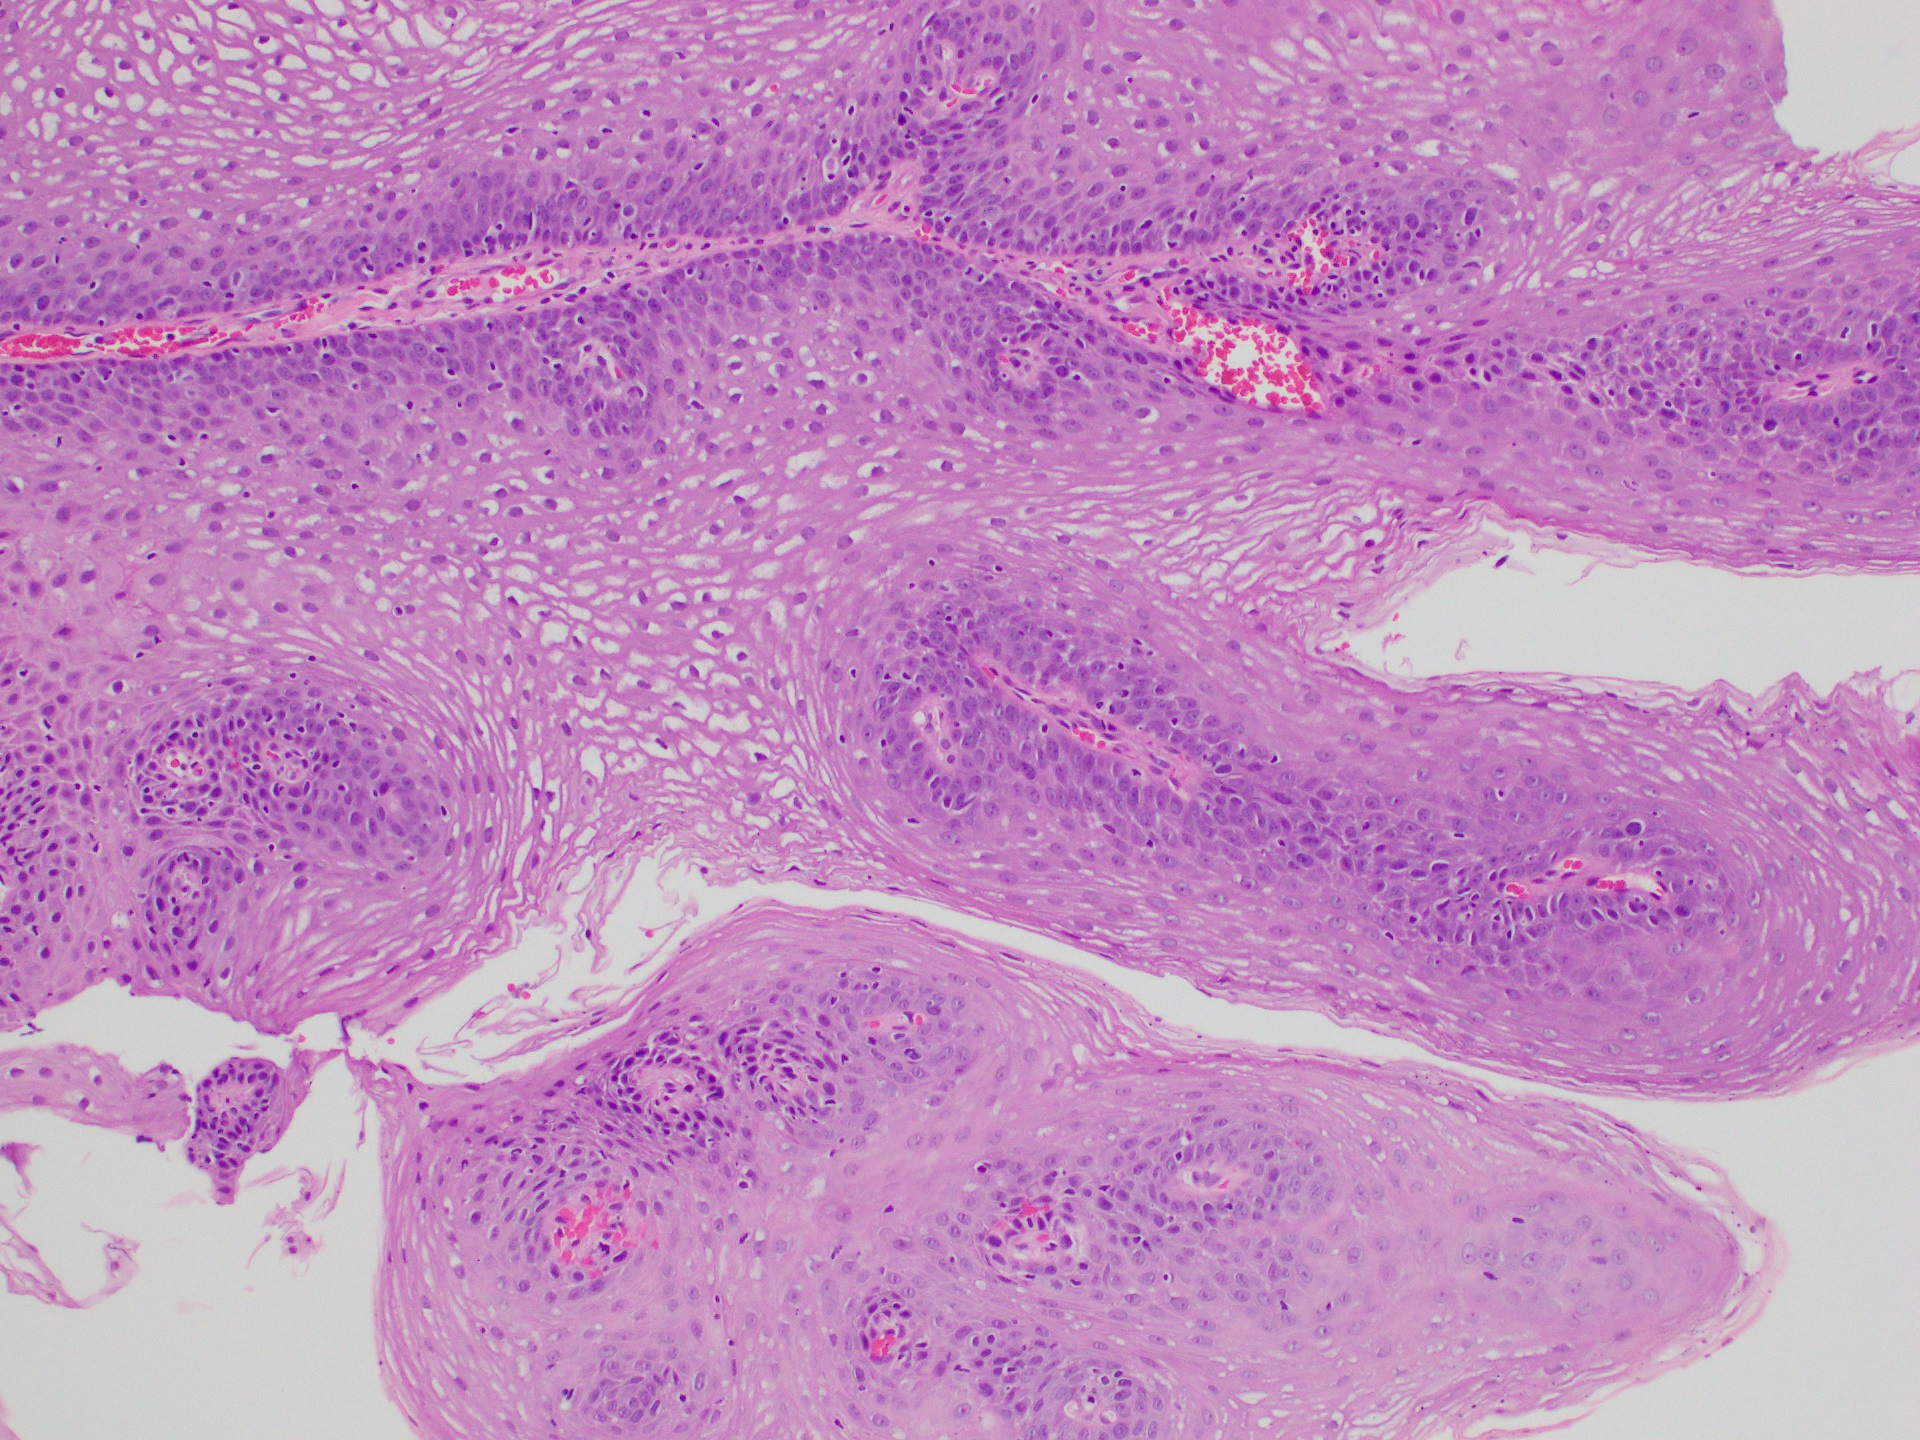 Squamous papilloma pathology outlines skin, Papilloma is squamous